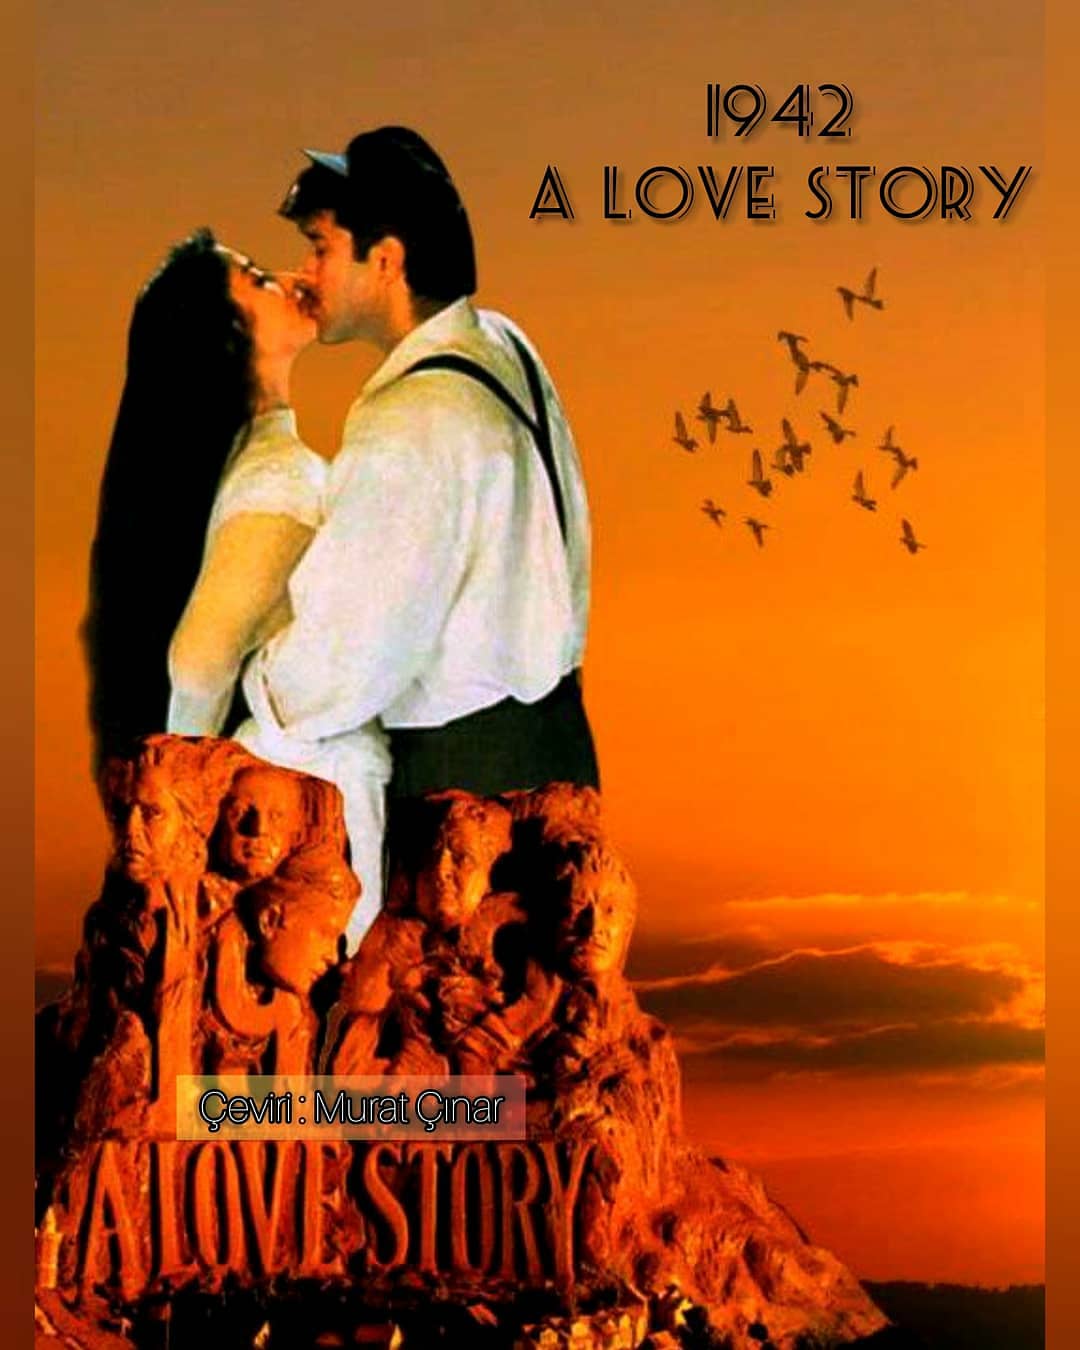 1942: A Love Story (1994) Türkçe Altyazılı izle